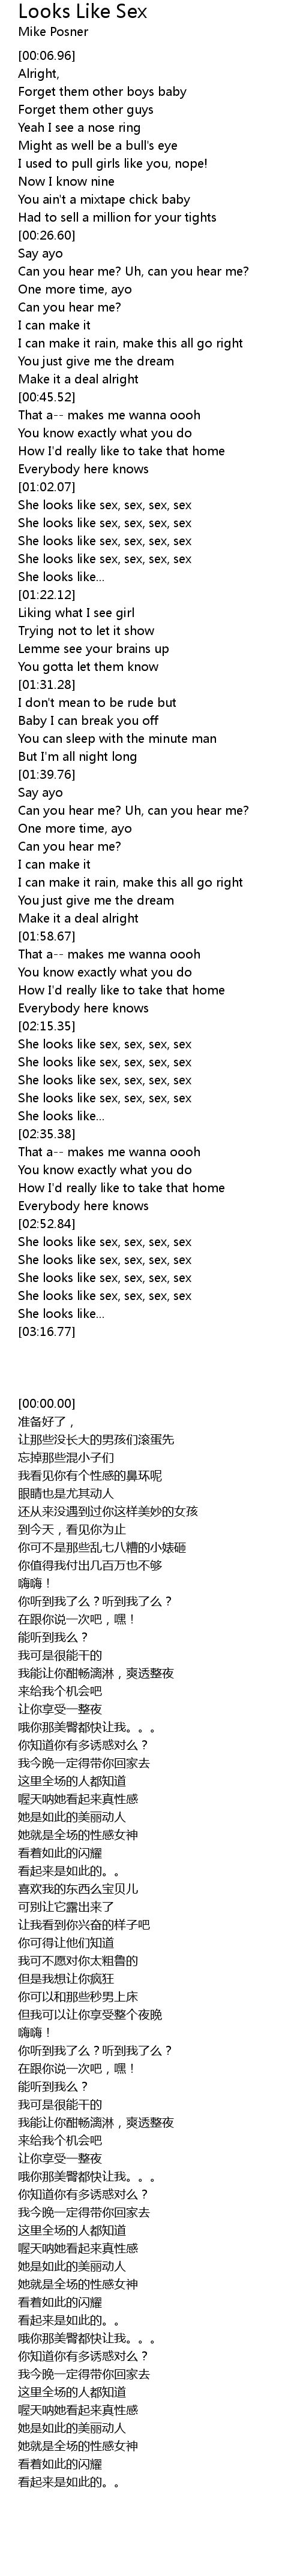 More sex than me lyrics